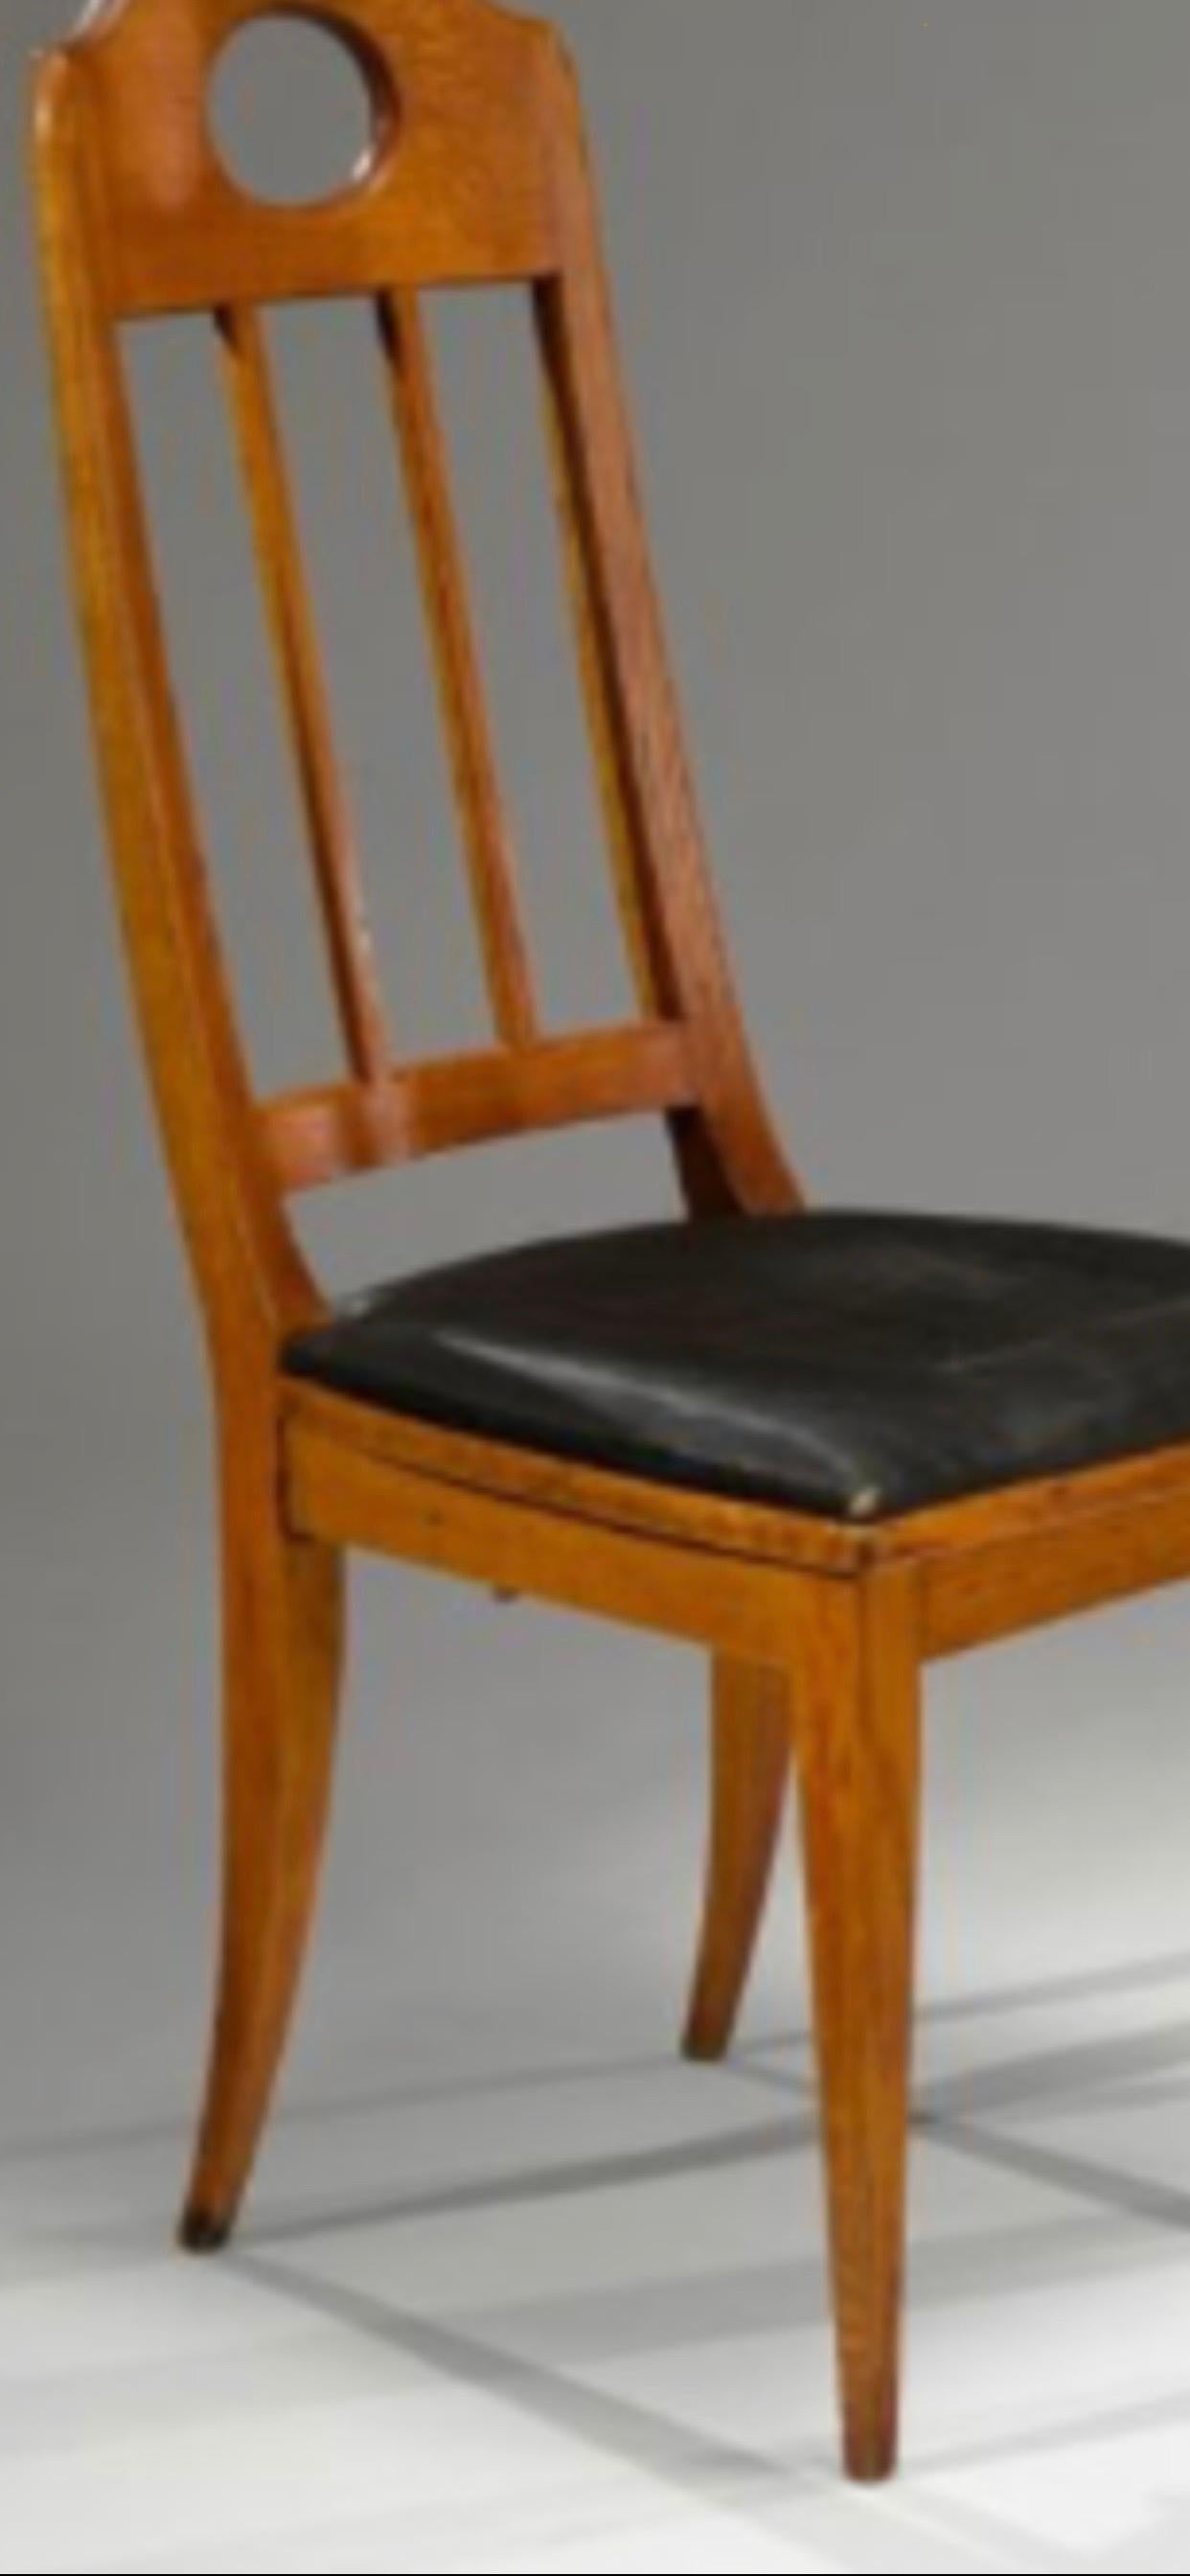 A pair of high back oak chairs, circa 1905.